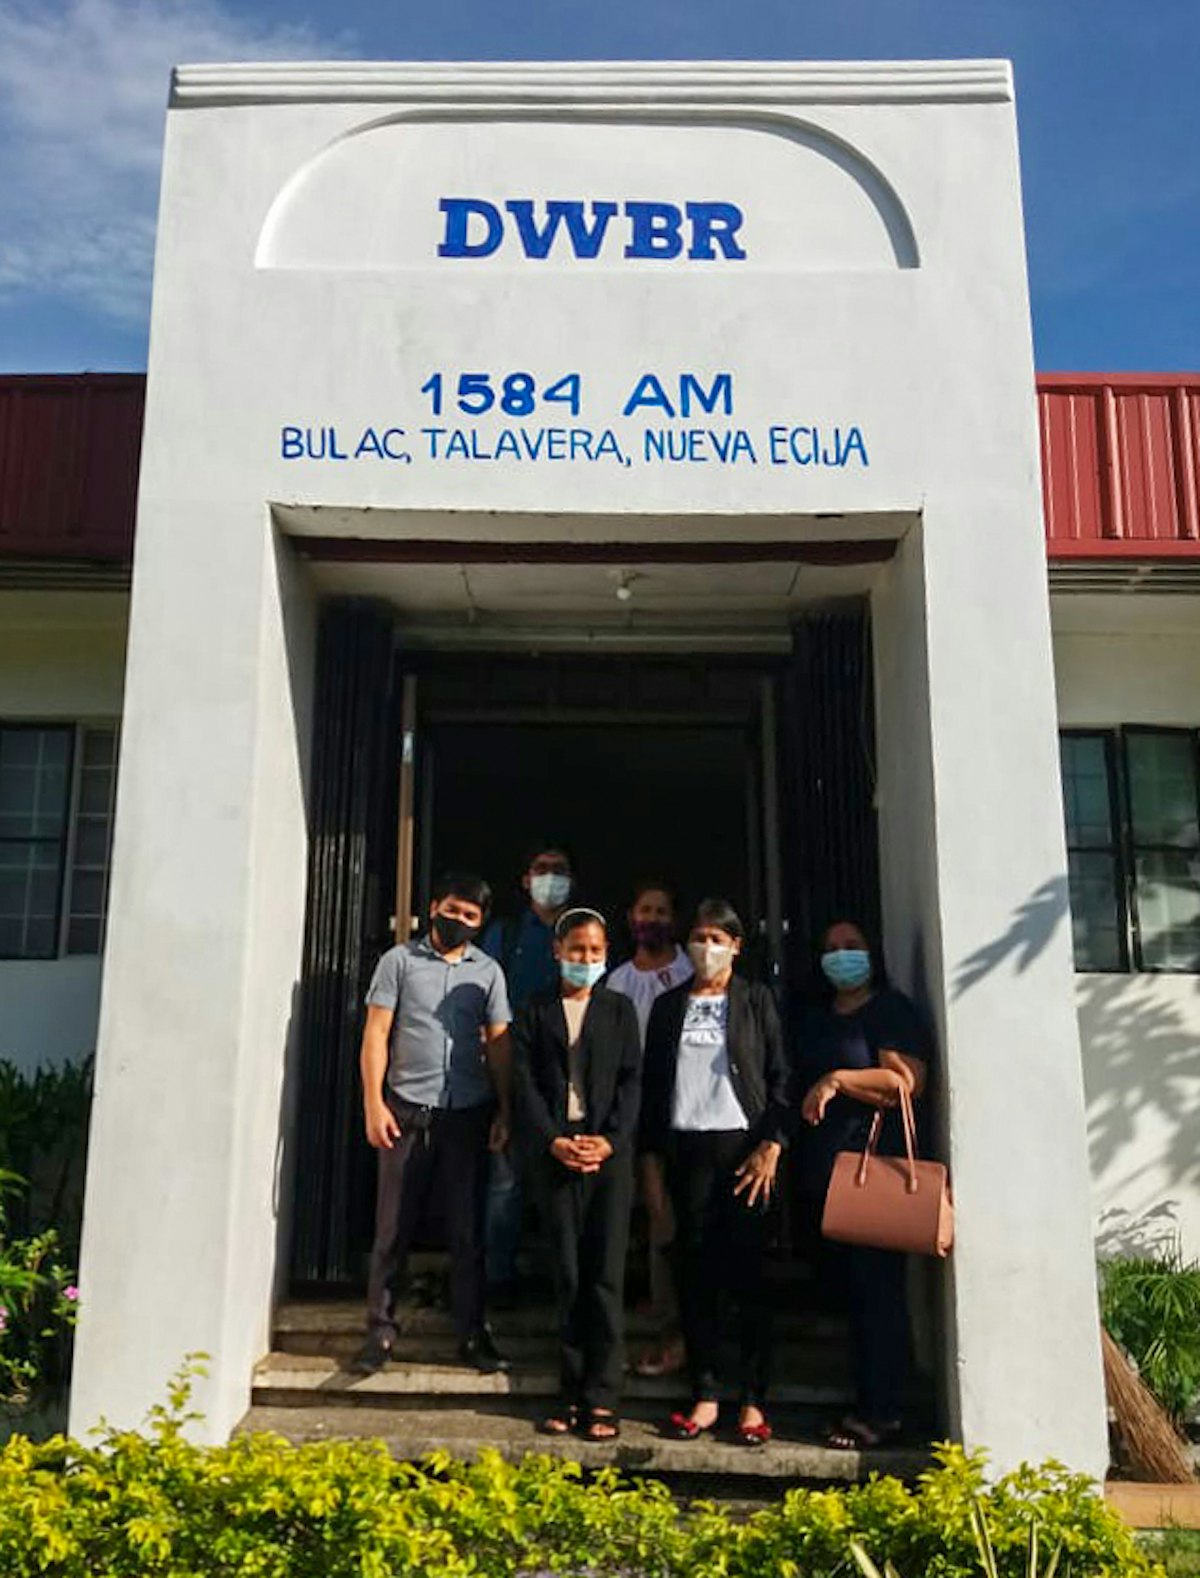 Des représentants du ministère de l’Éducation visitent Radyo Bahá’í aux Philippines. La station collabore avec le ministère pour répondre aux besoins éducatifs de la région.